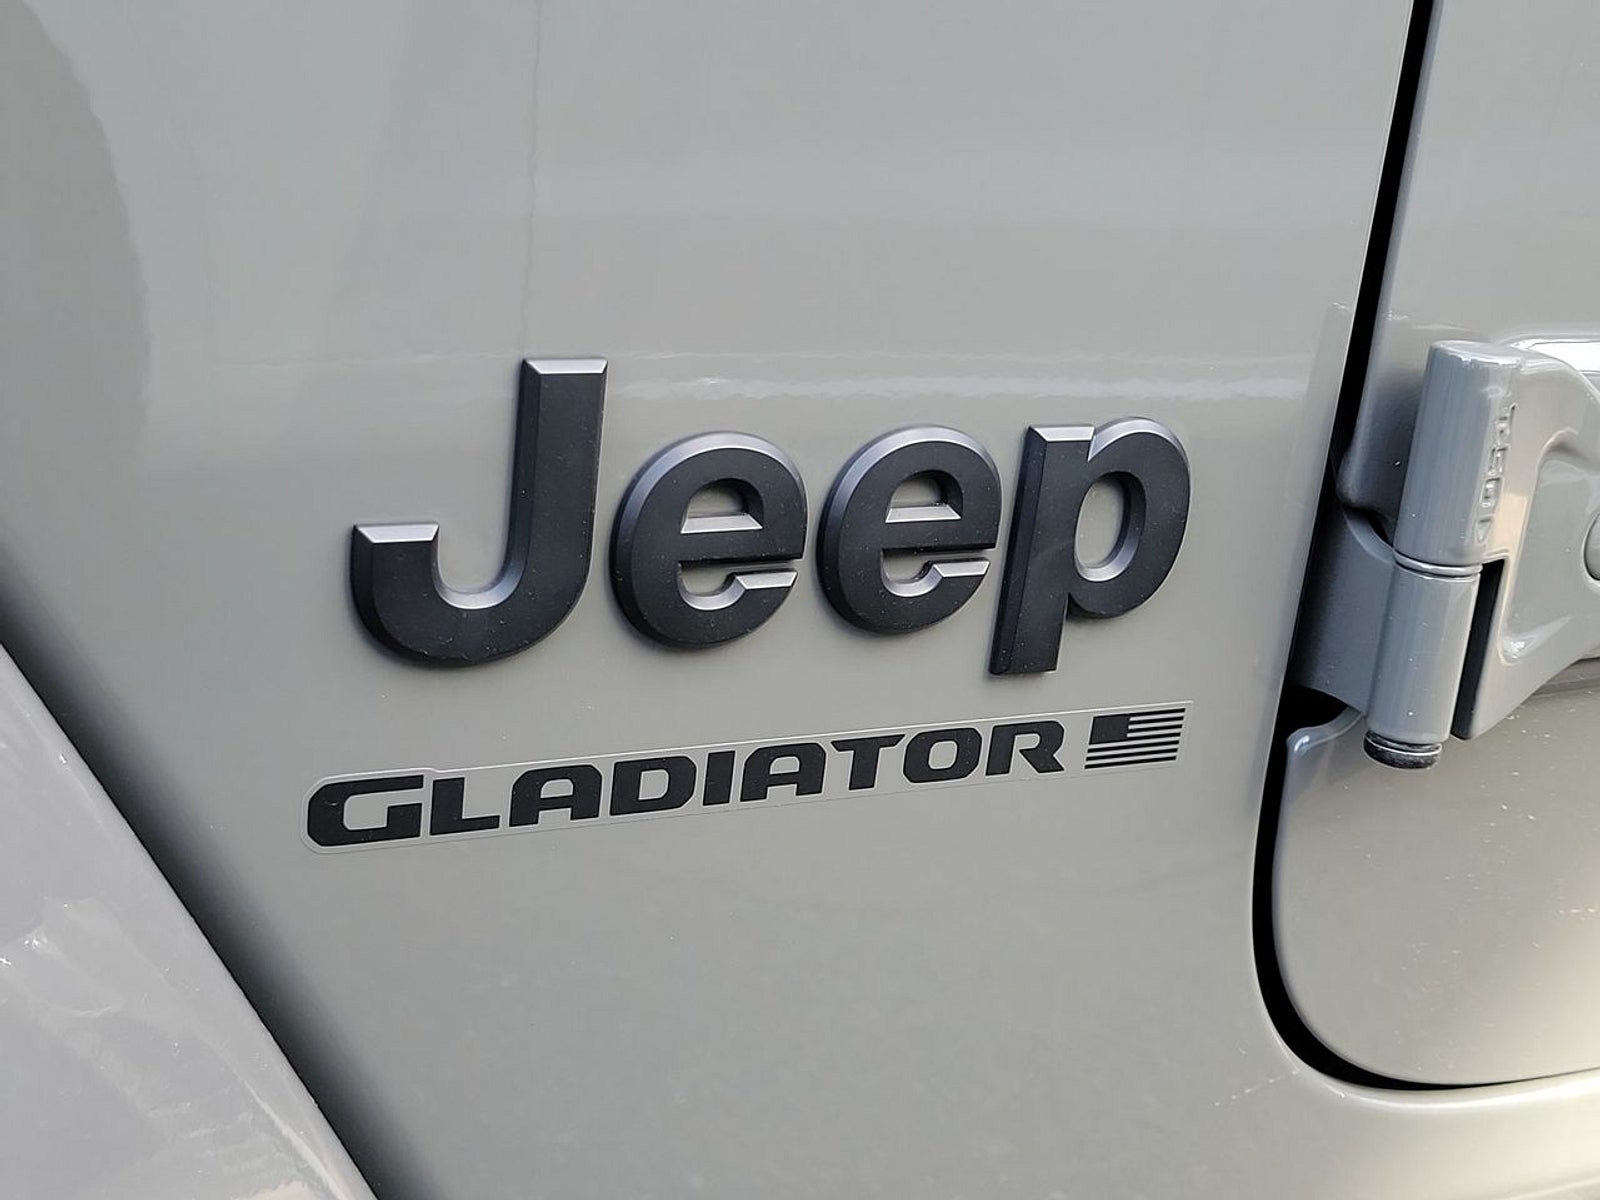 2023 Jeep Gladiator Willys Sport